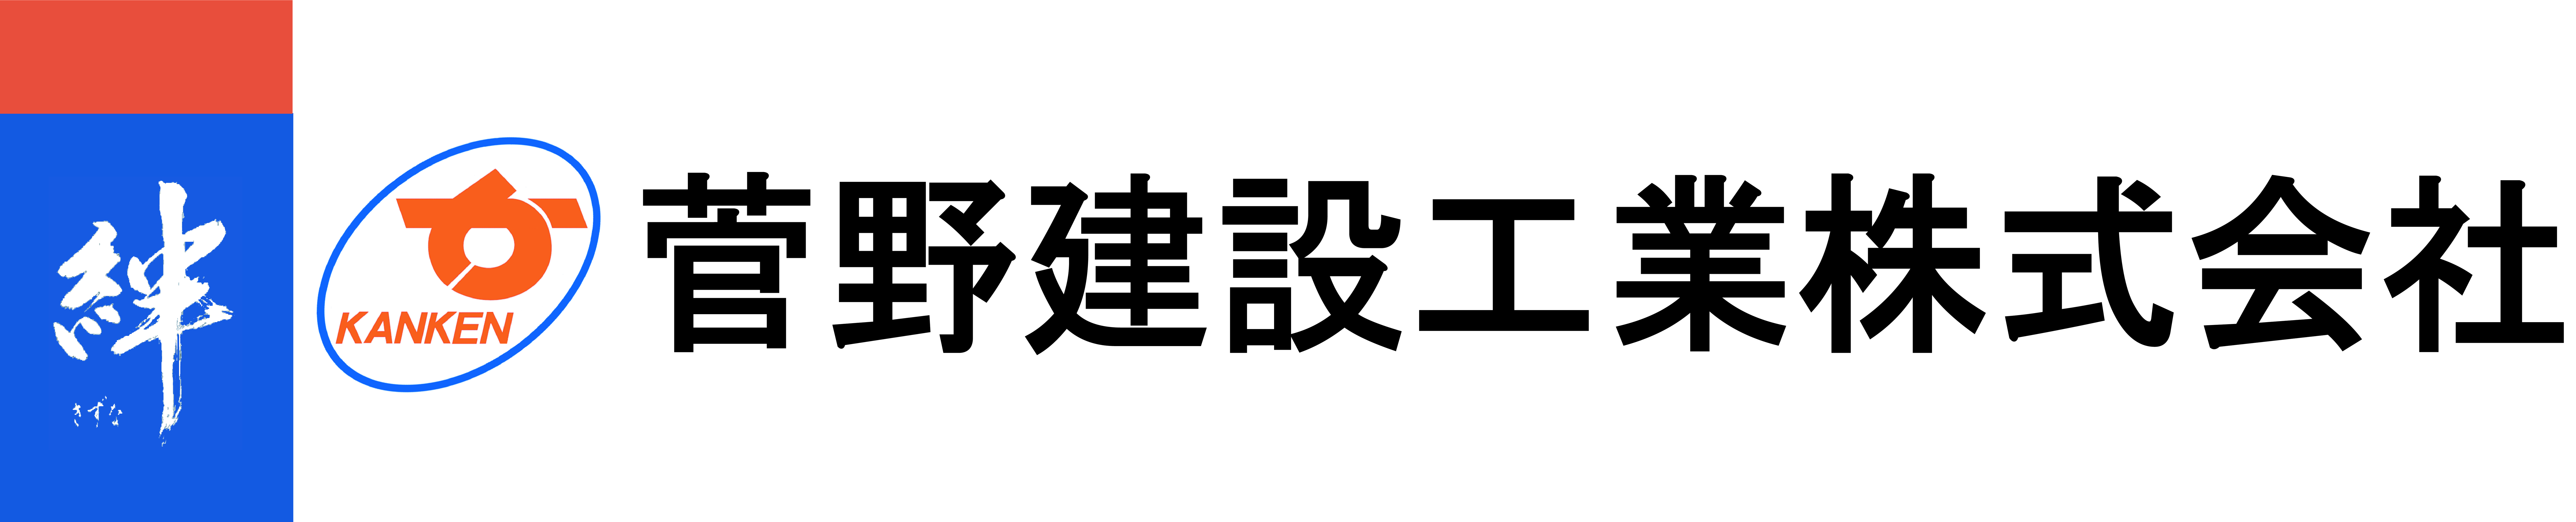 菅野建設工業株式会社 様 オフィシャルクラブパートナー決定のお知らせ 福島ユナイテッドfc 公式サイト Fukushima United Fc Official Website